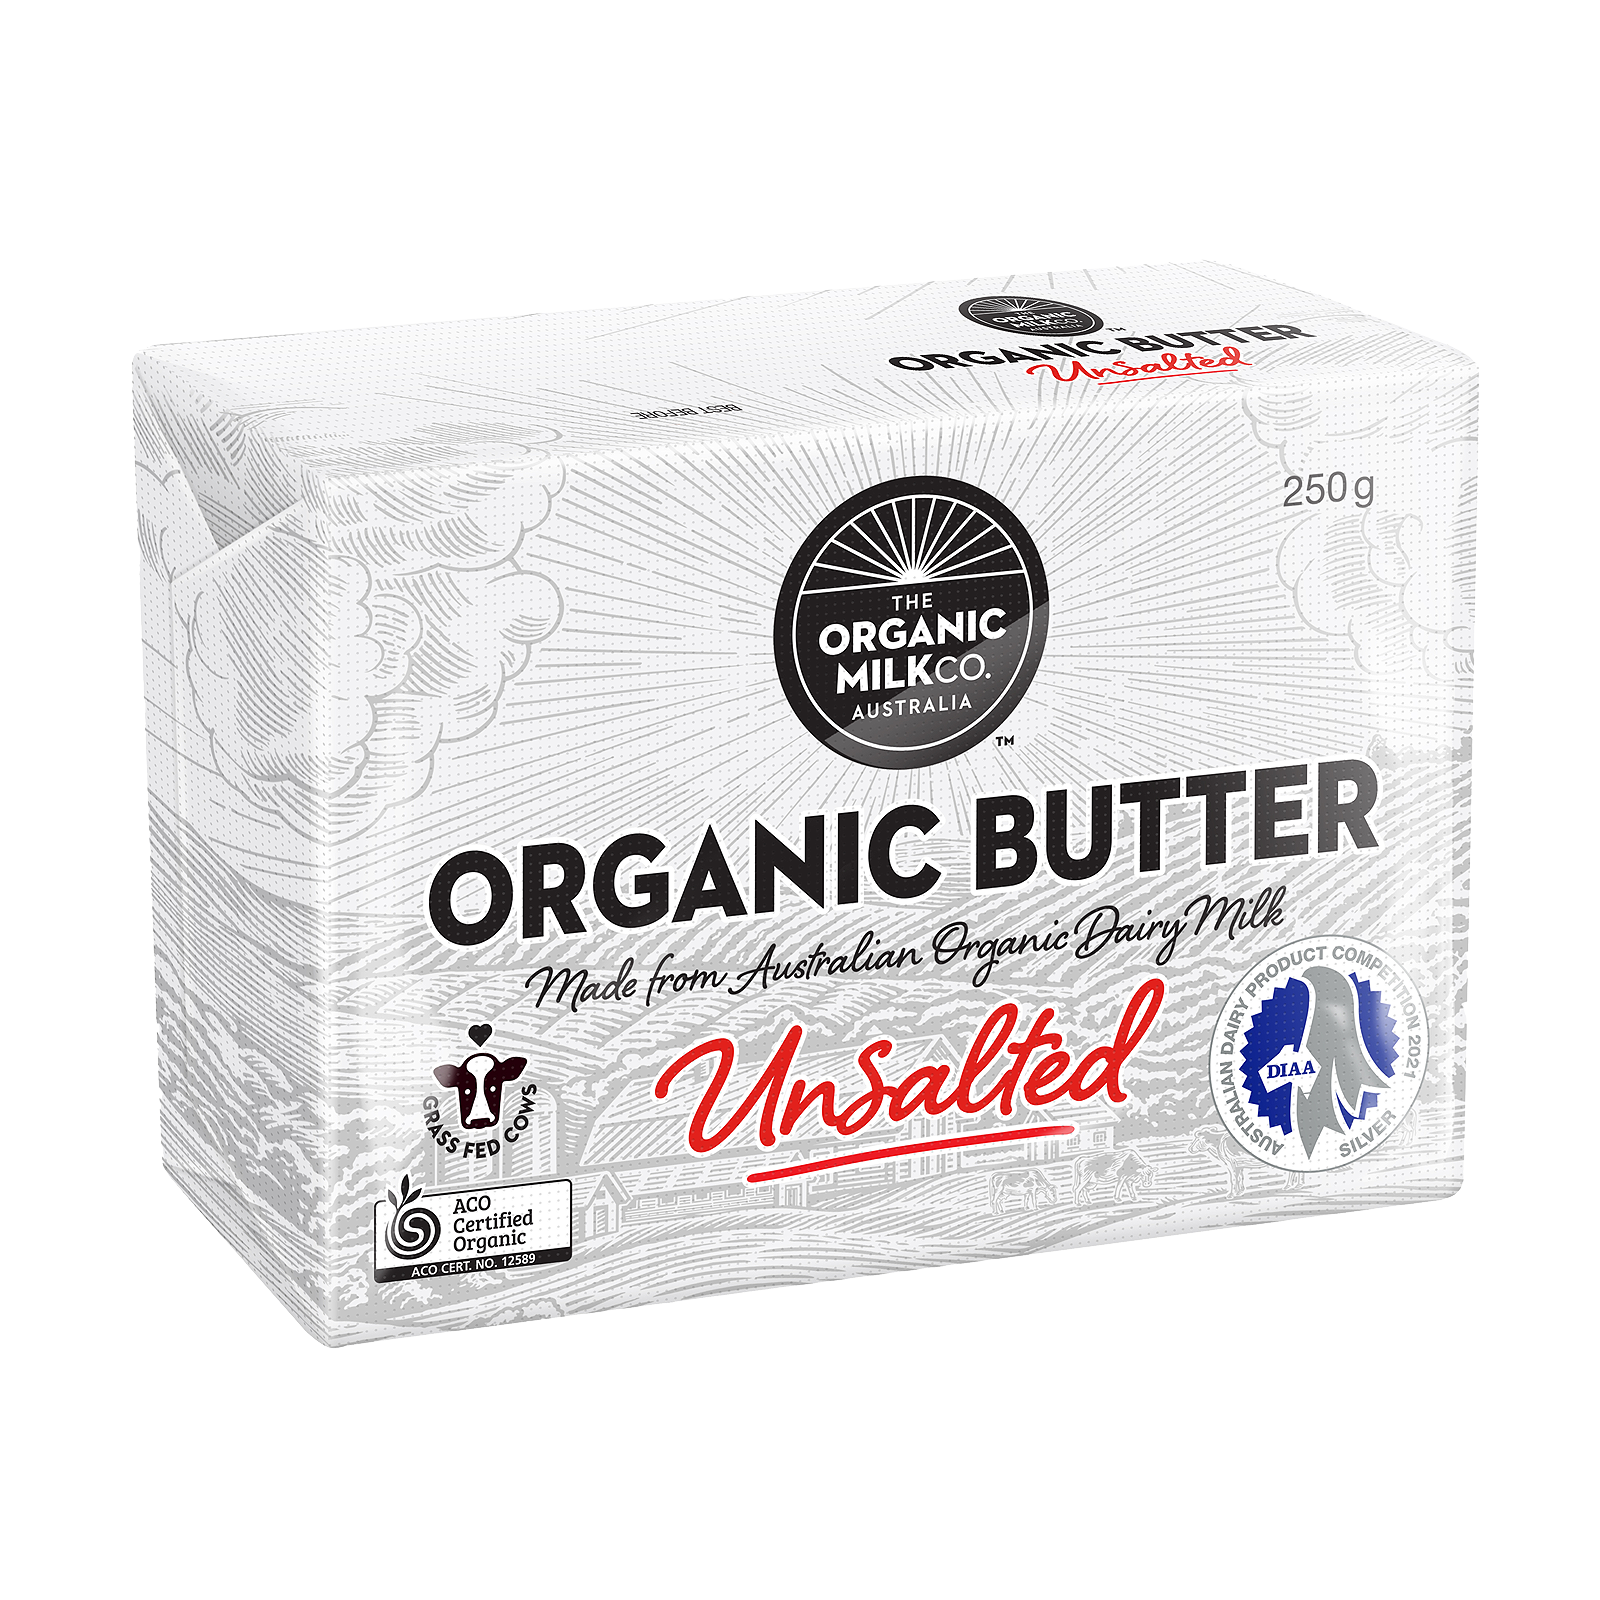 Certified Organic Grass-Fed Unsalted Butter (250g) - Horizon Farms